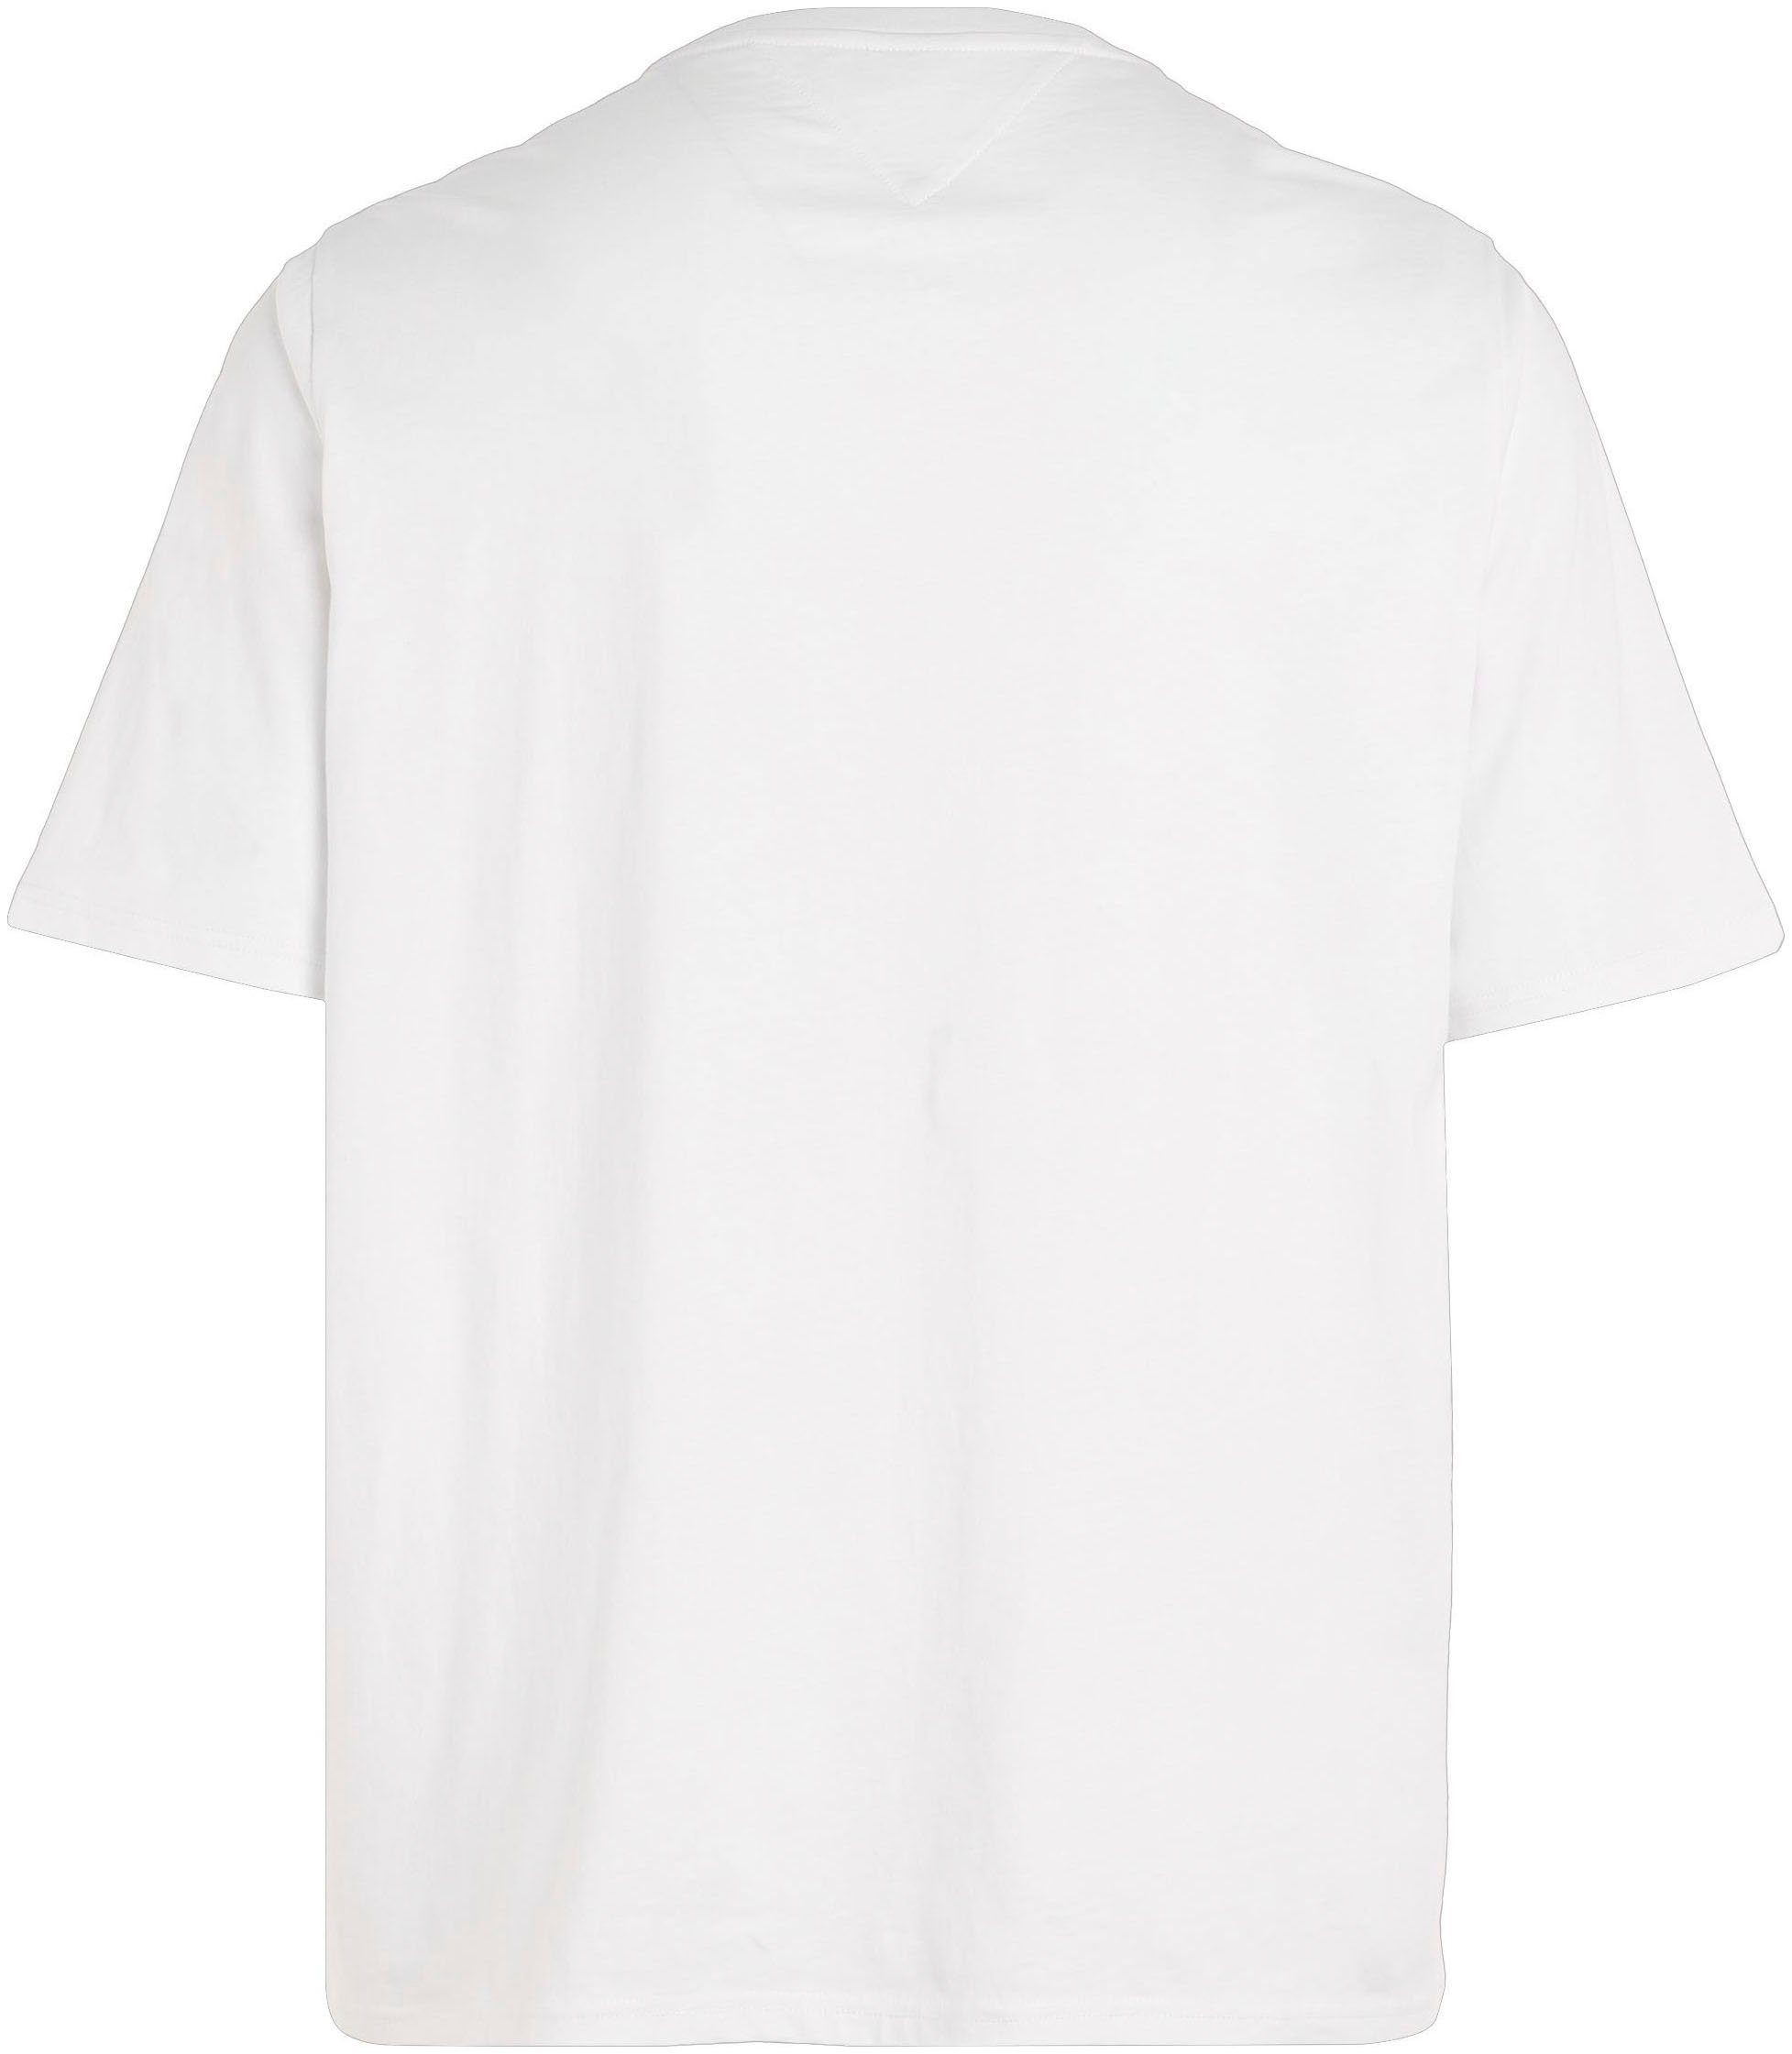 Jeans Print PLUS Brust T-Shirt Plus GRAPHIC TJM der ESSENTIAL White auf Tommy TEE mit